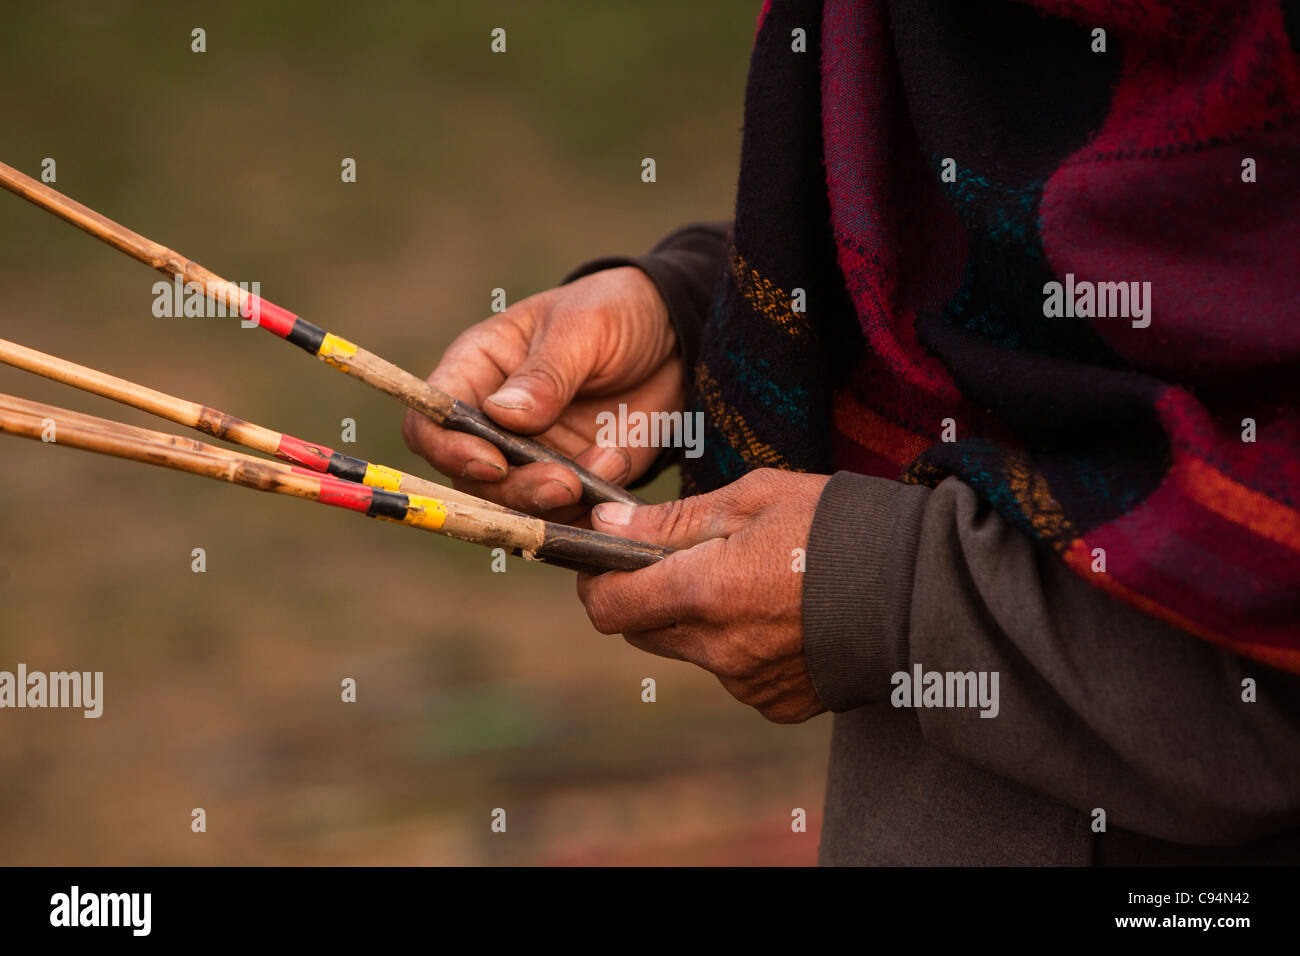 India, Meghalaya, Shillong, Bola juego de tiro con arco, mano sosteniendo flechas Foto de stock